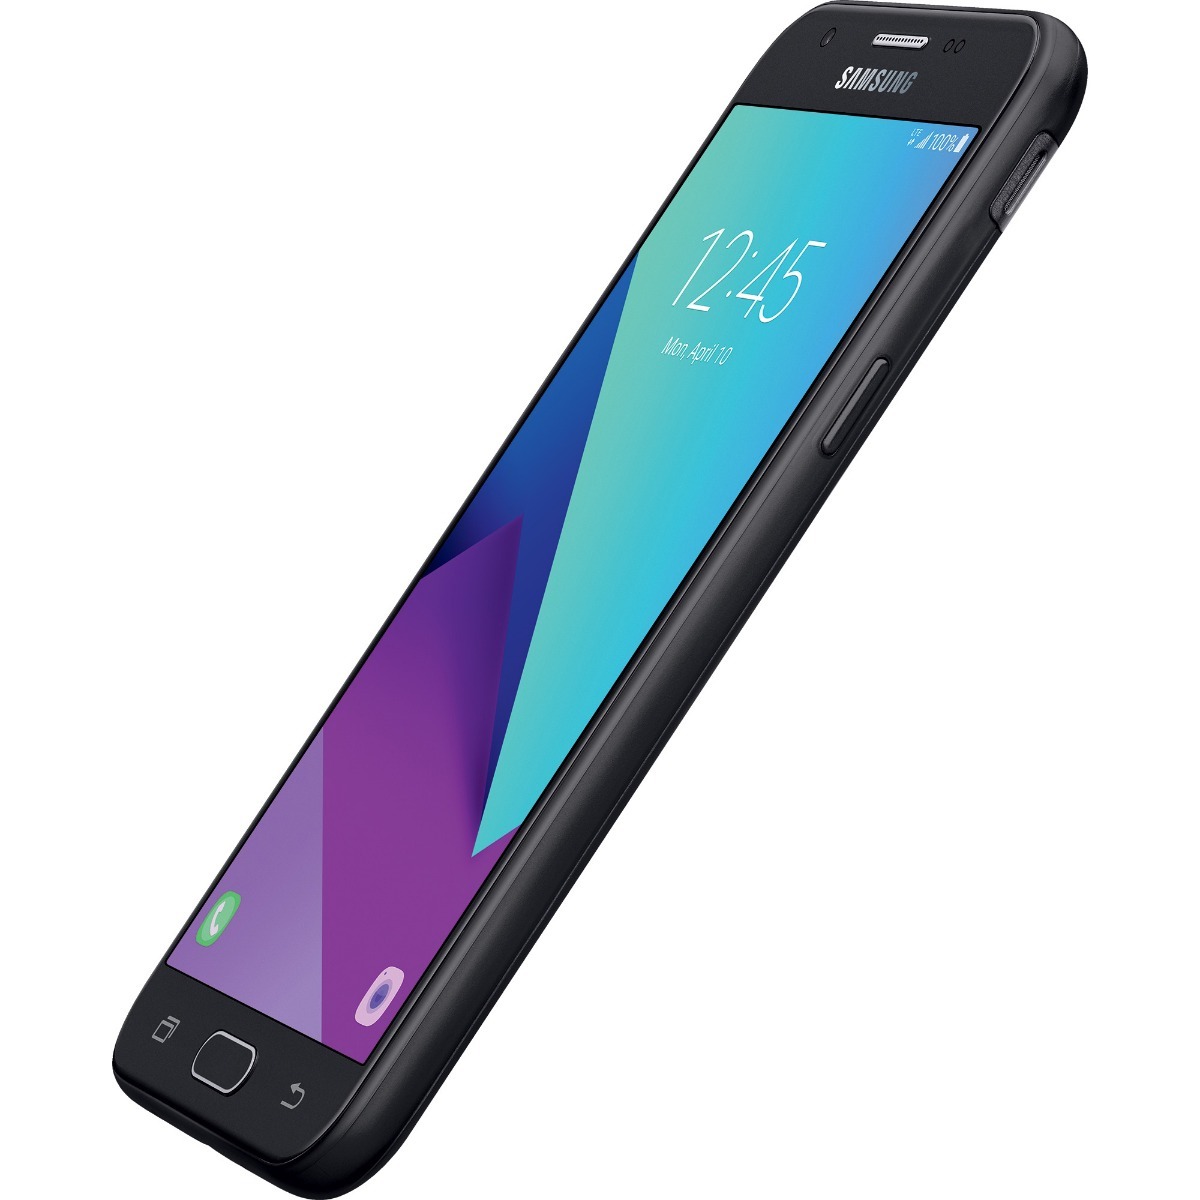 Samsung Galaxy J3 Luna Pro Liberado 16 Gb 1.5 Gb Ram - Bs. 3,49 en